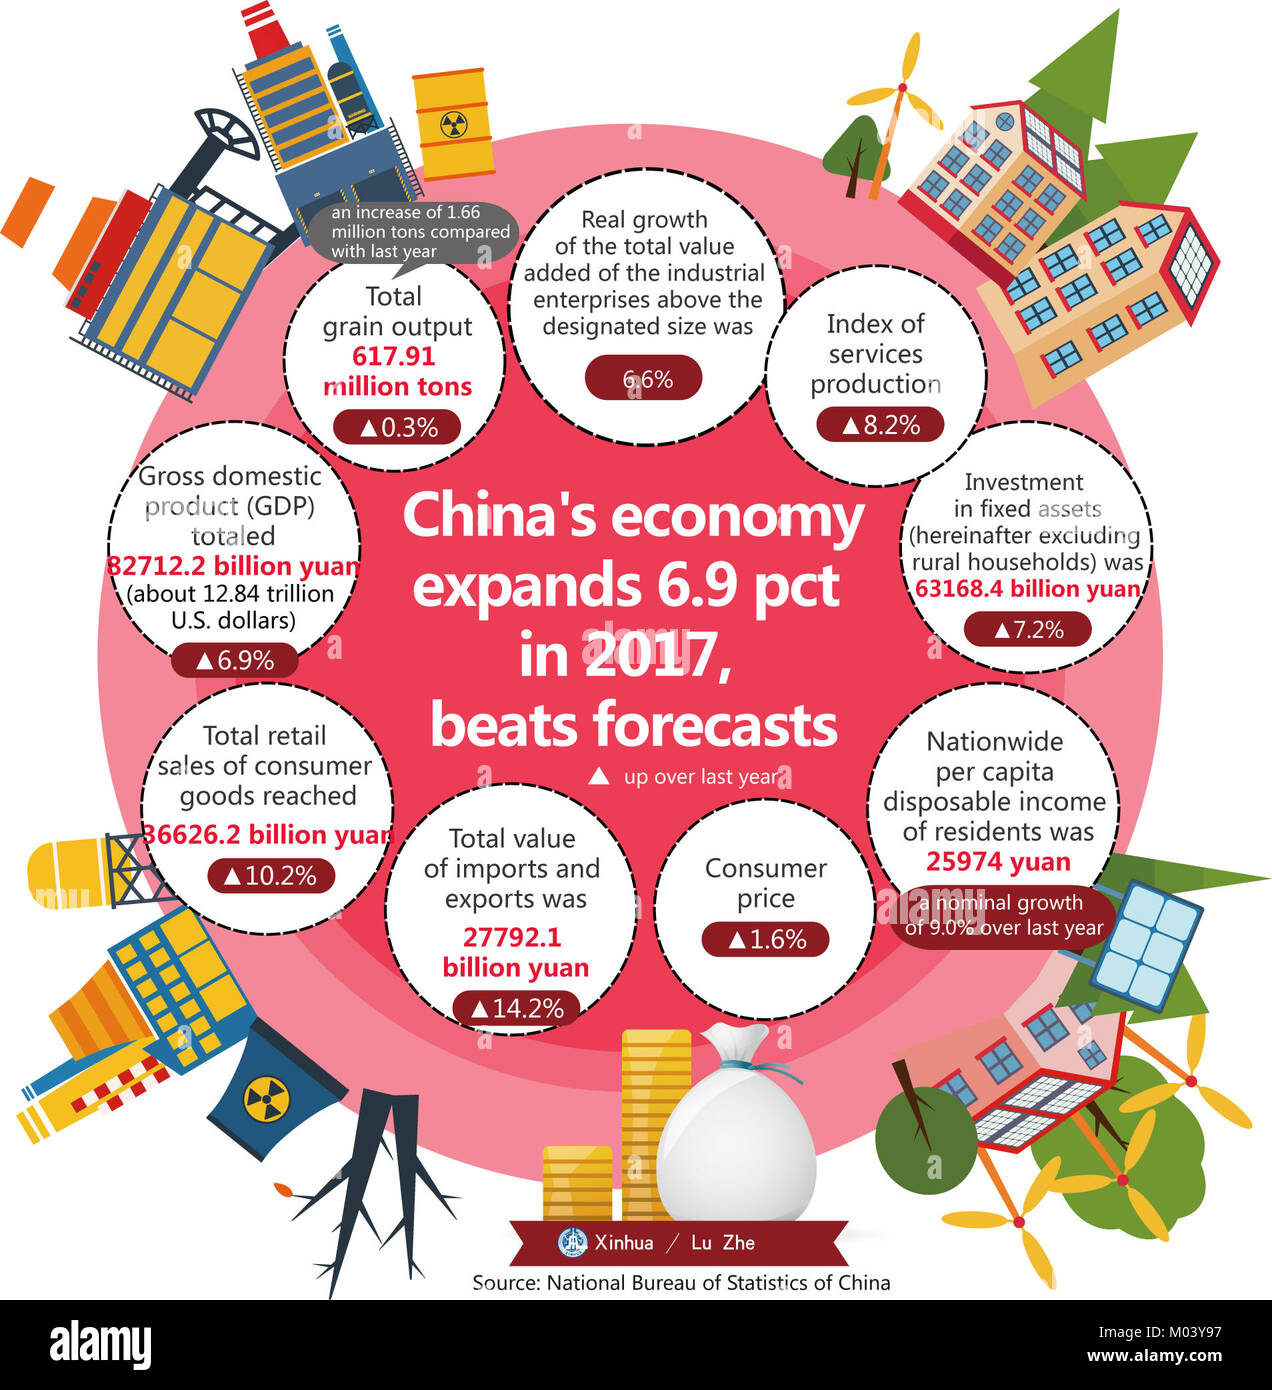 Beijing, China. 18 ene, 2017. El gráfico muestra que la economía China finalizó el 2017 sobre bases sólidas, con un mejor de lo esperado de la tasa de crecimiento y de mejora de la estructura, según los datos oficiales mostraban el jueves. Crédito: Lu Zhe/Xinhua/Alamy Live News Foto de stock